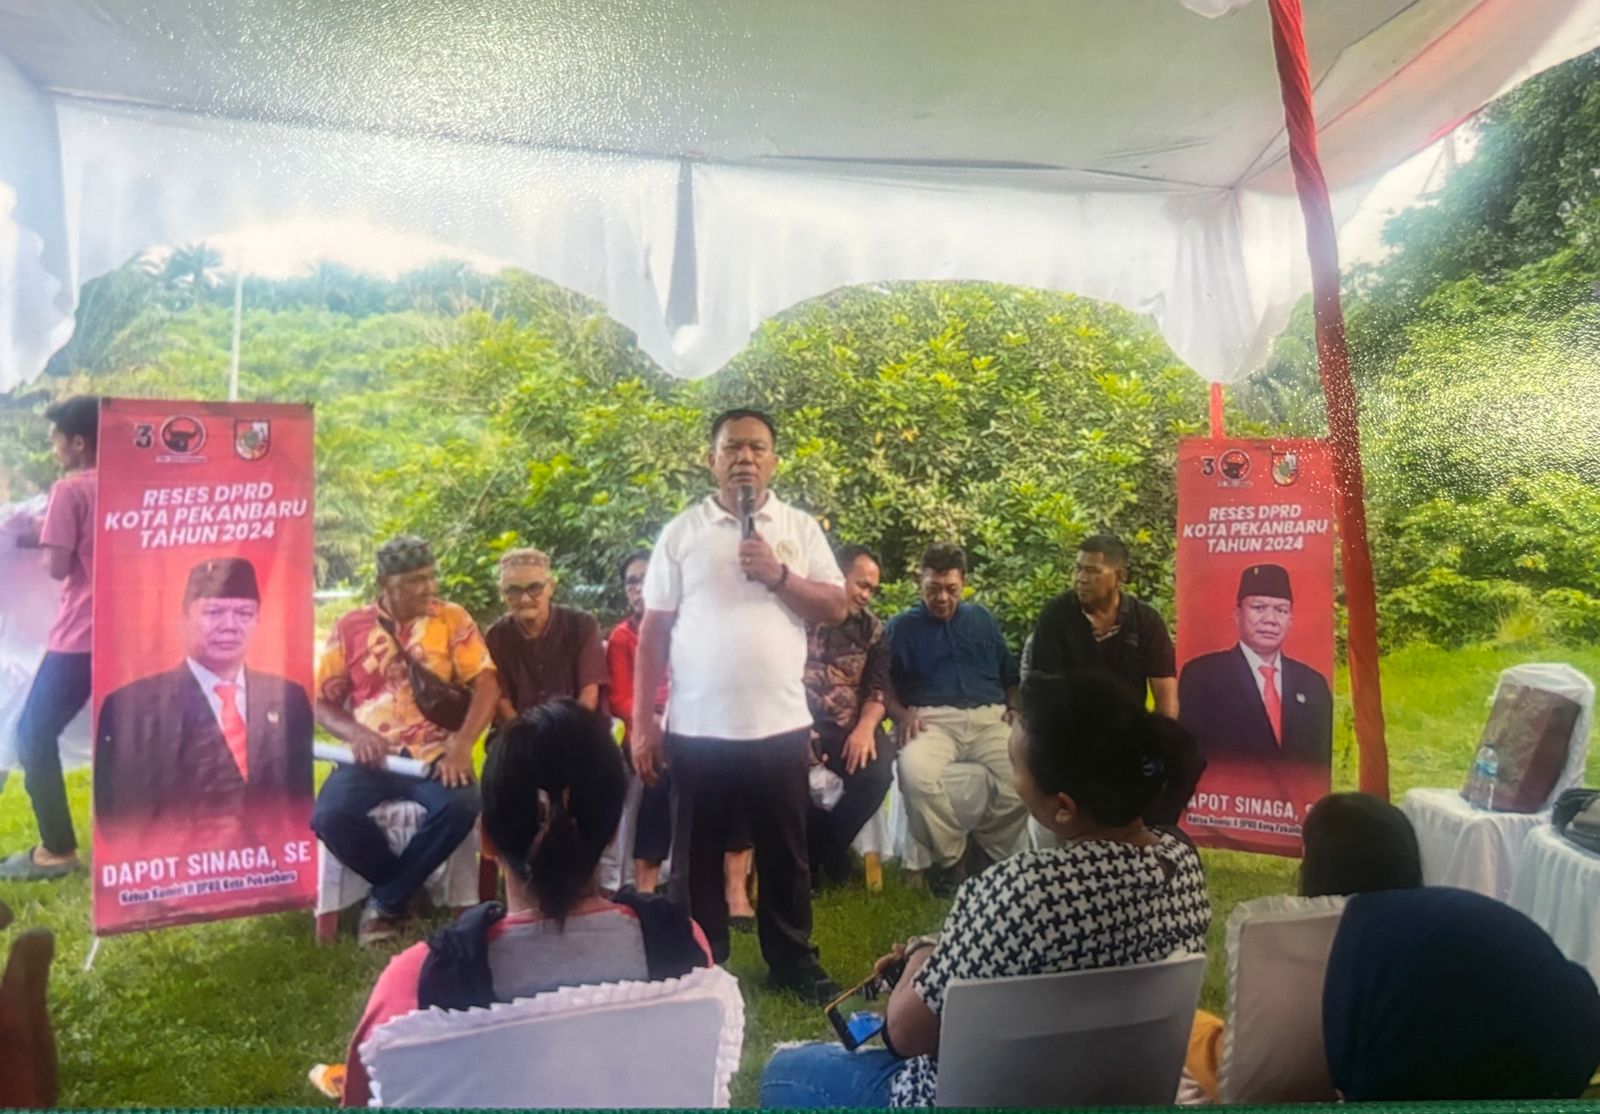 Anggota DPRD Kota Pekanbaru dari Fraksi PDI Perjuangan Dapot Sinaga saat menjemput aspirasi masyarakat